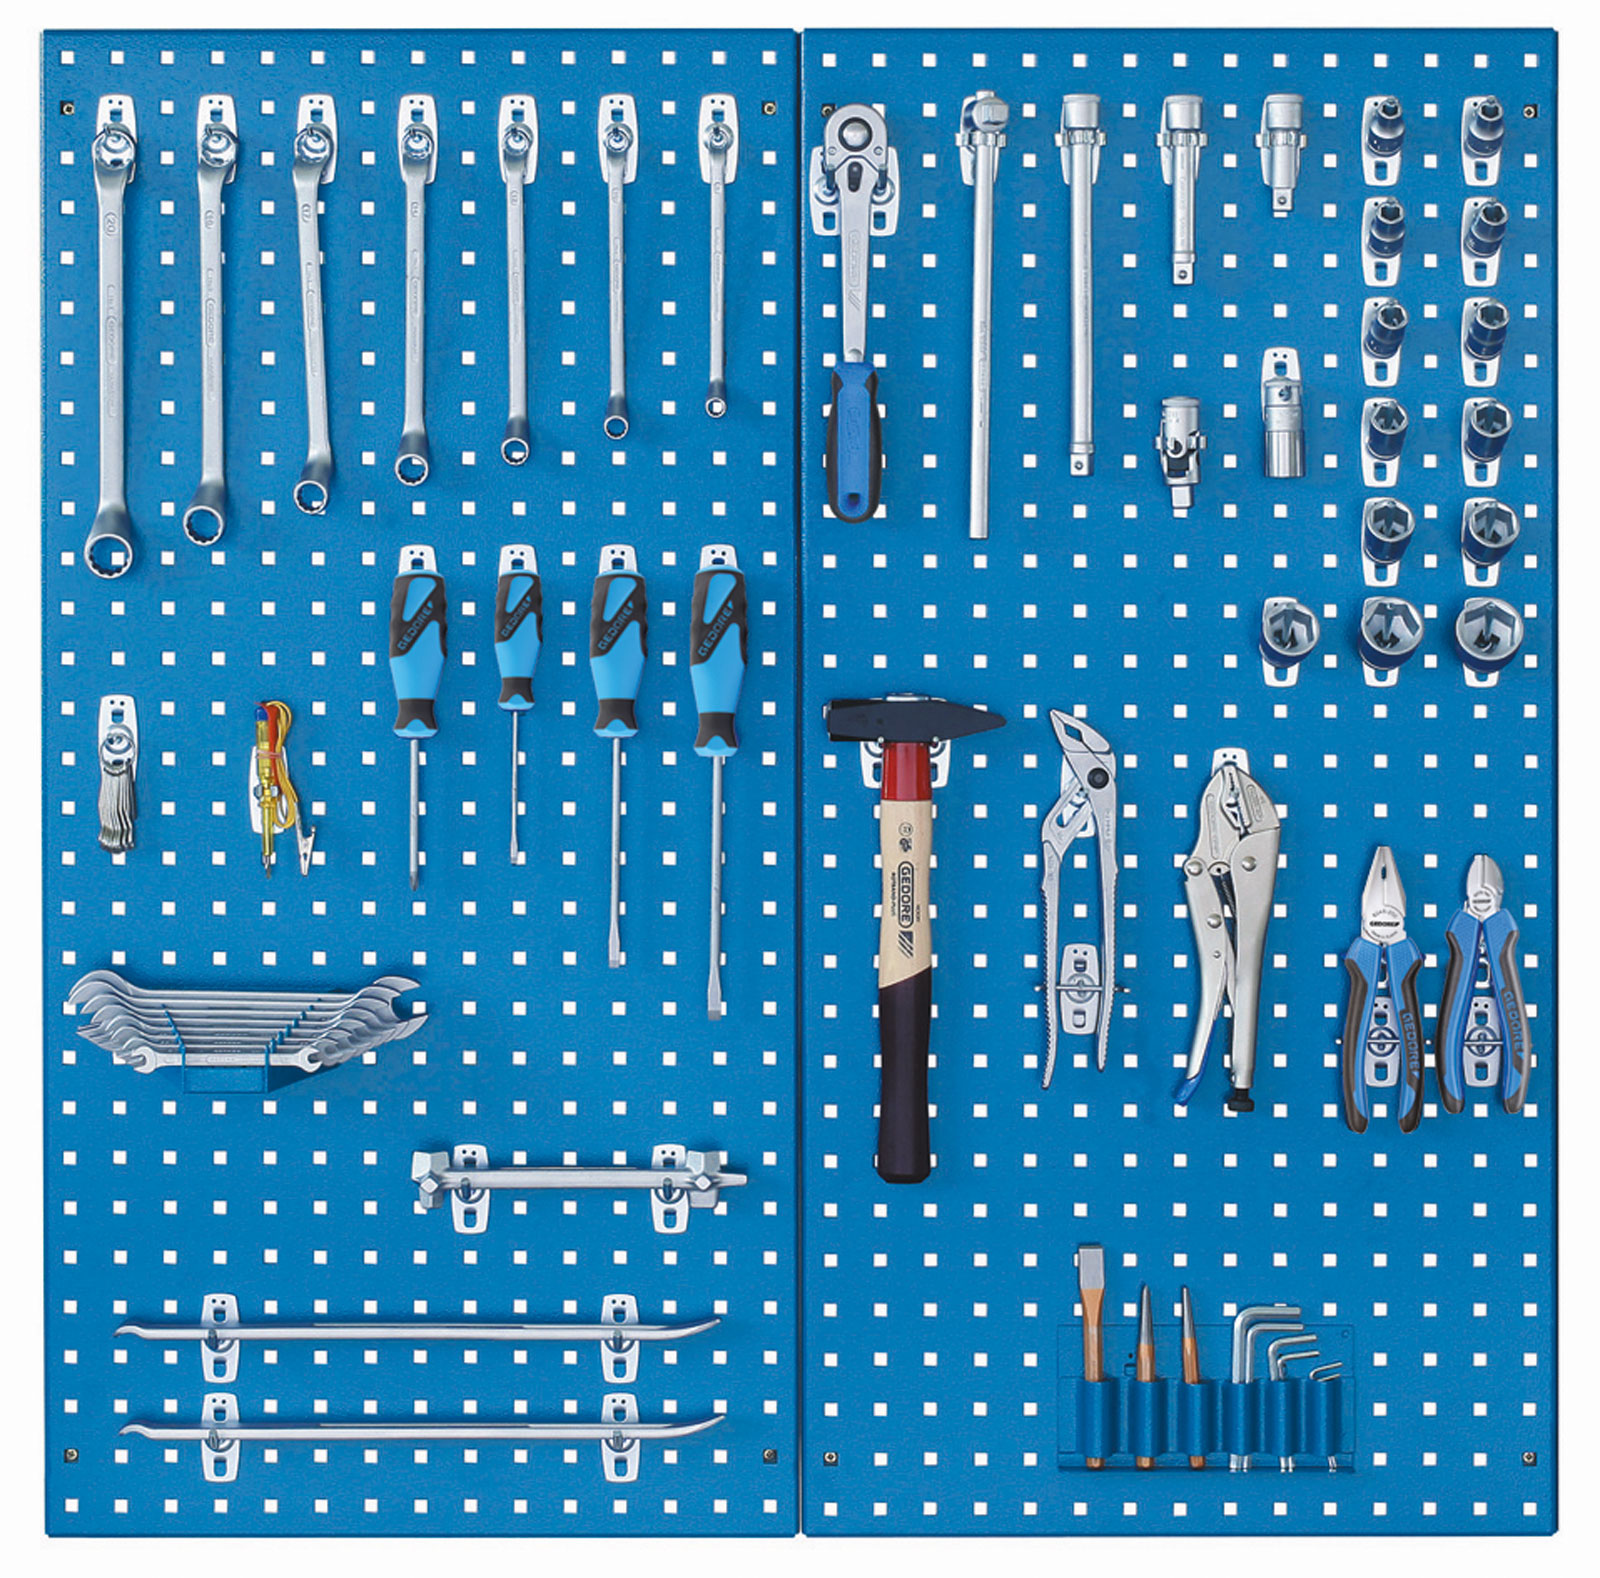 Bild für Kategorie S 1151 Werkzeugsortiment 68-teilig